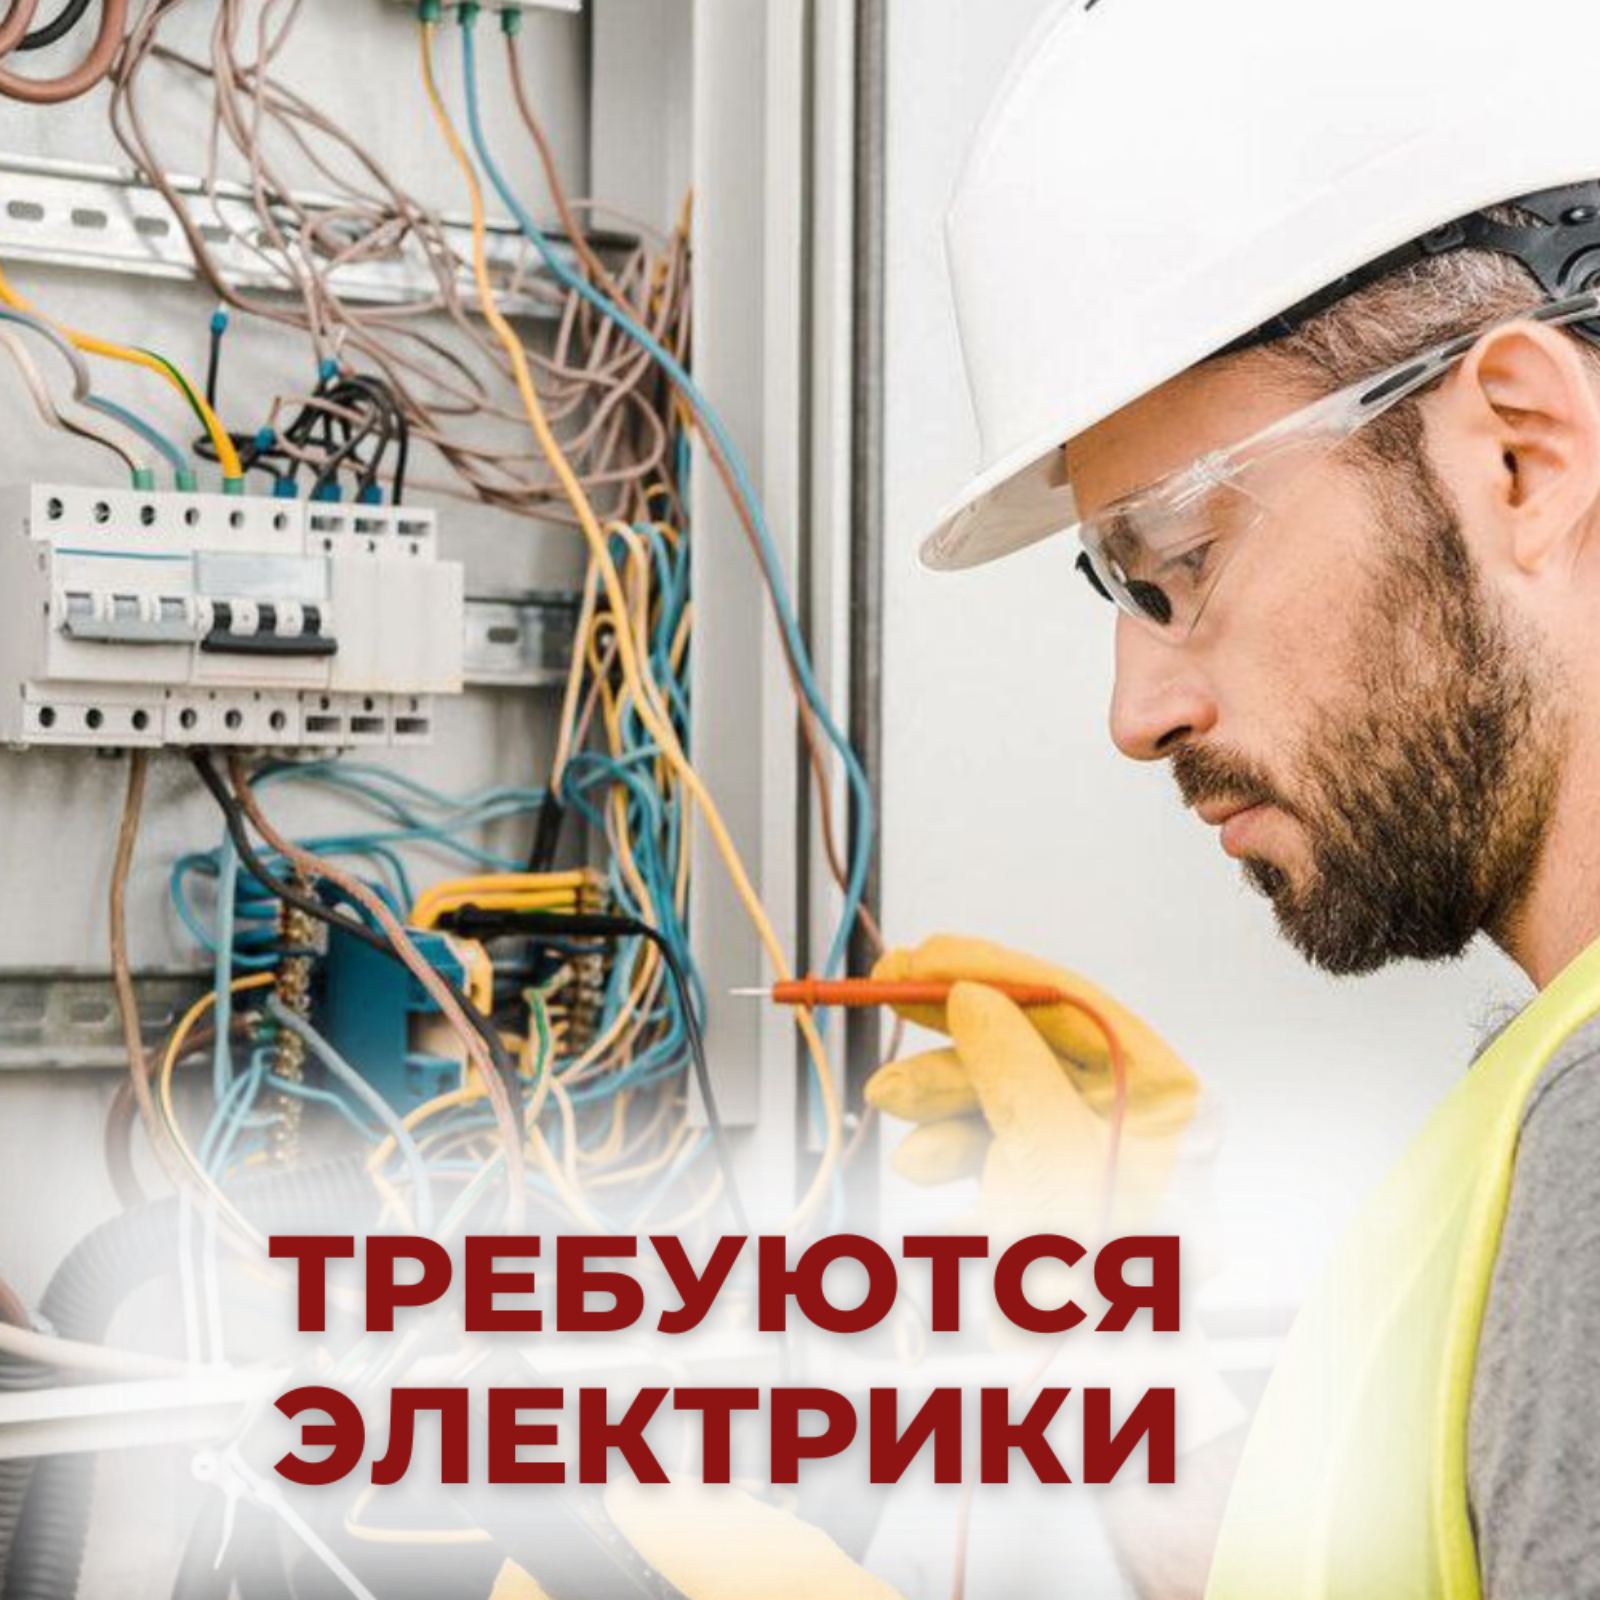 Вакансии в москве электромонтажника от прямых работодателей. Требуются электрики. Требуется электромонтажник. Требуется электрик. Электрик на постоянную работу.